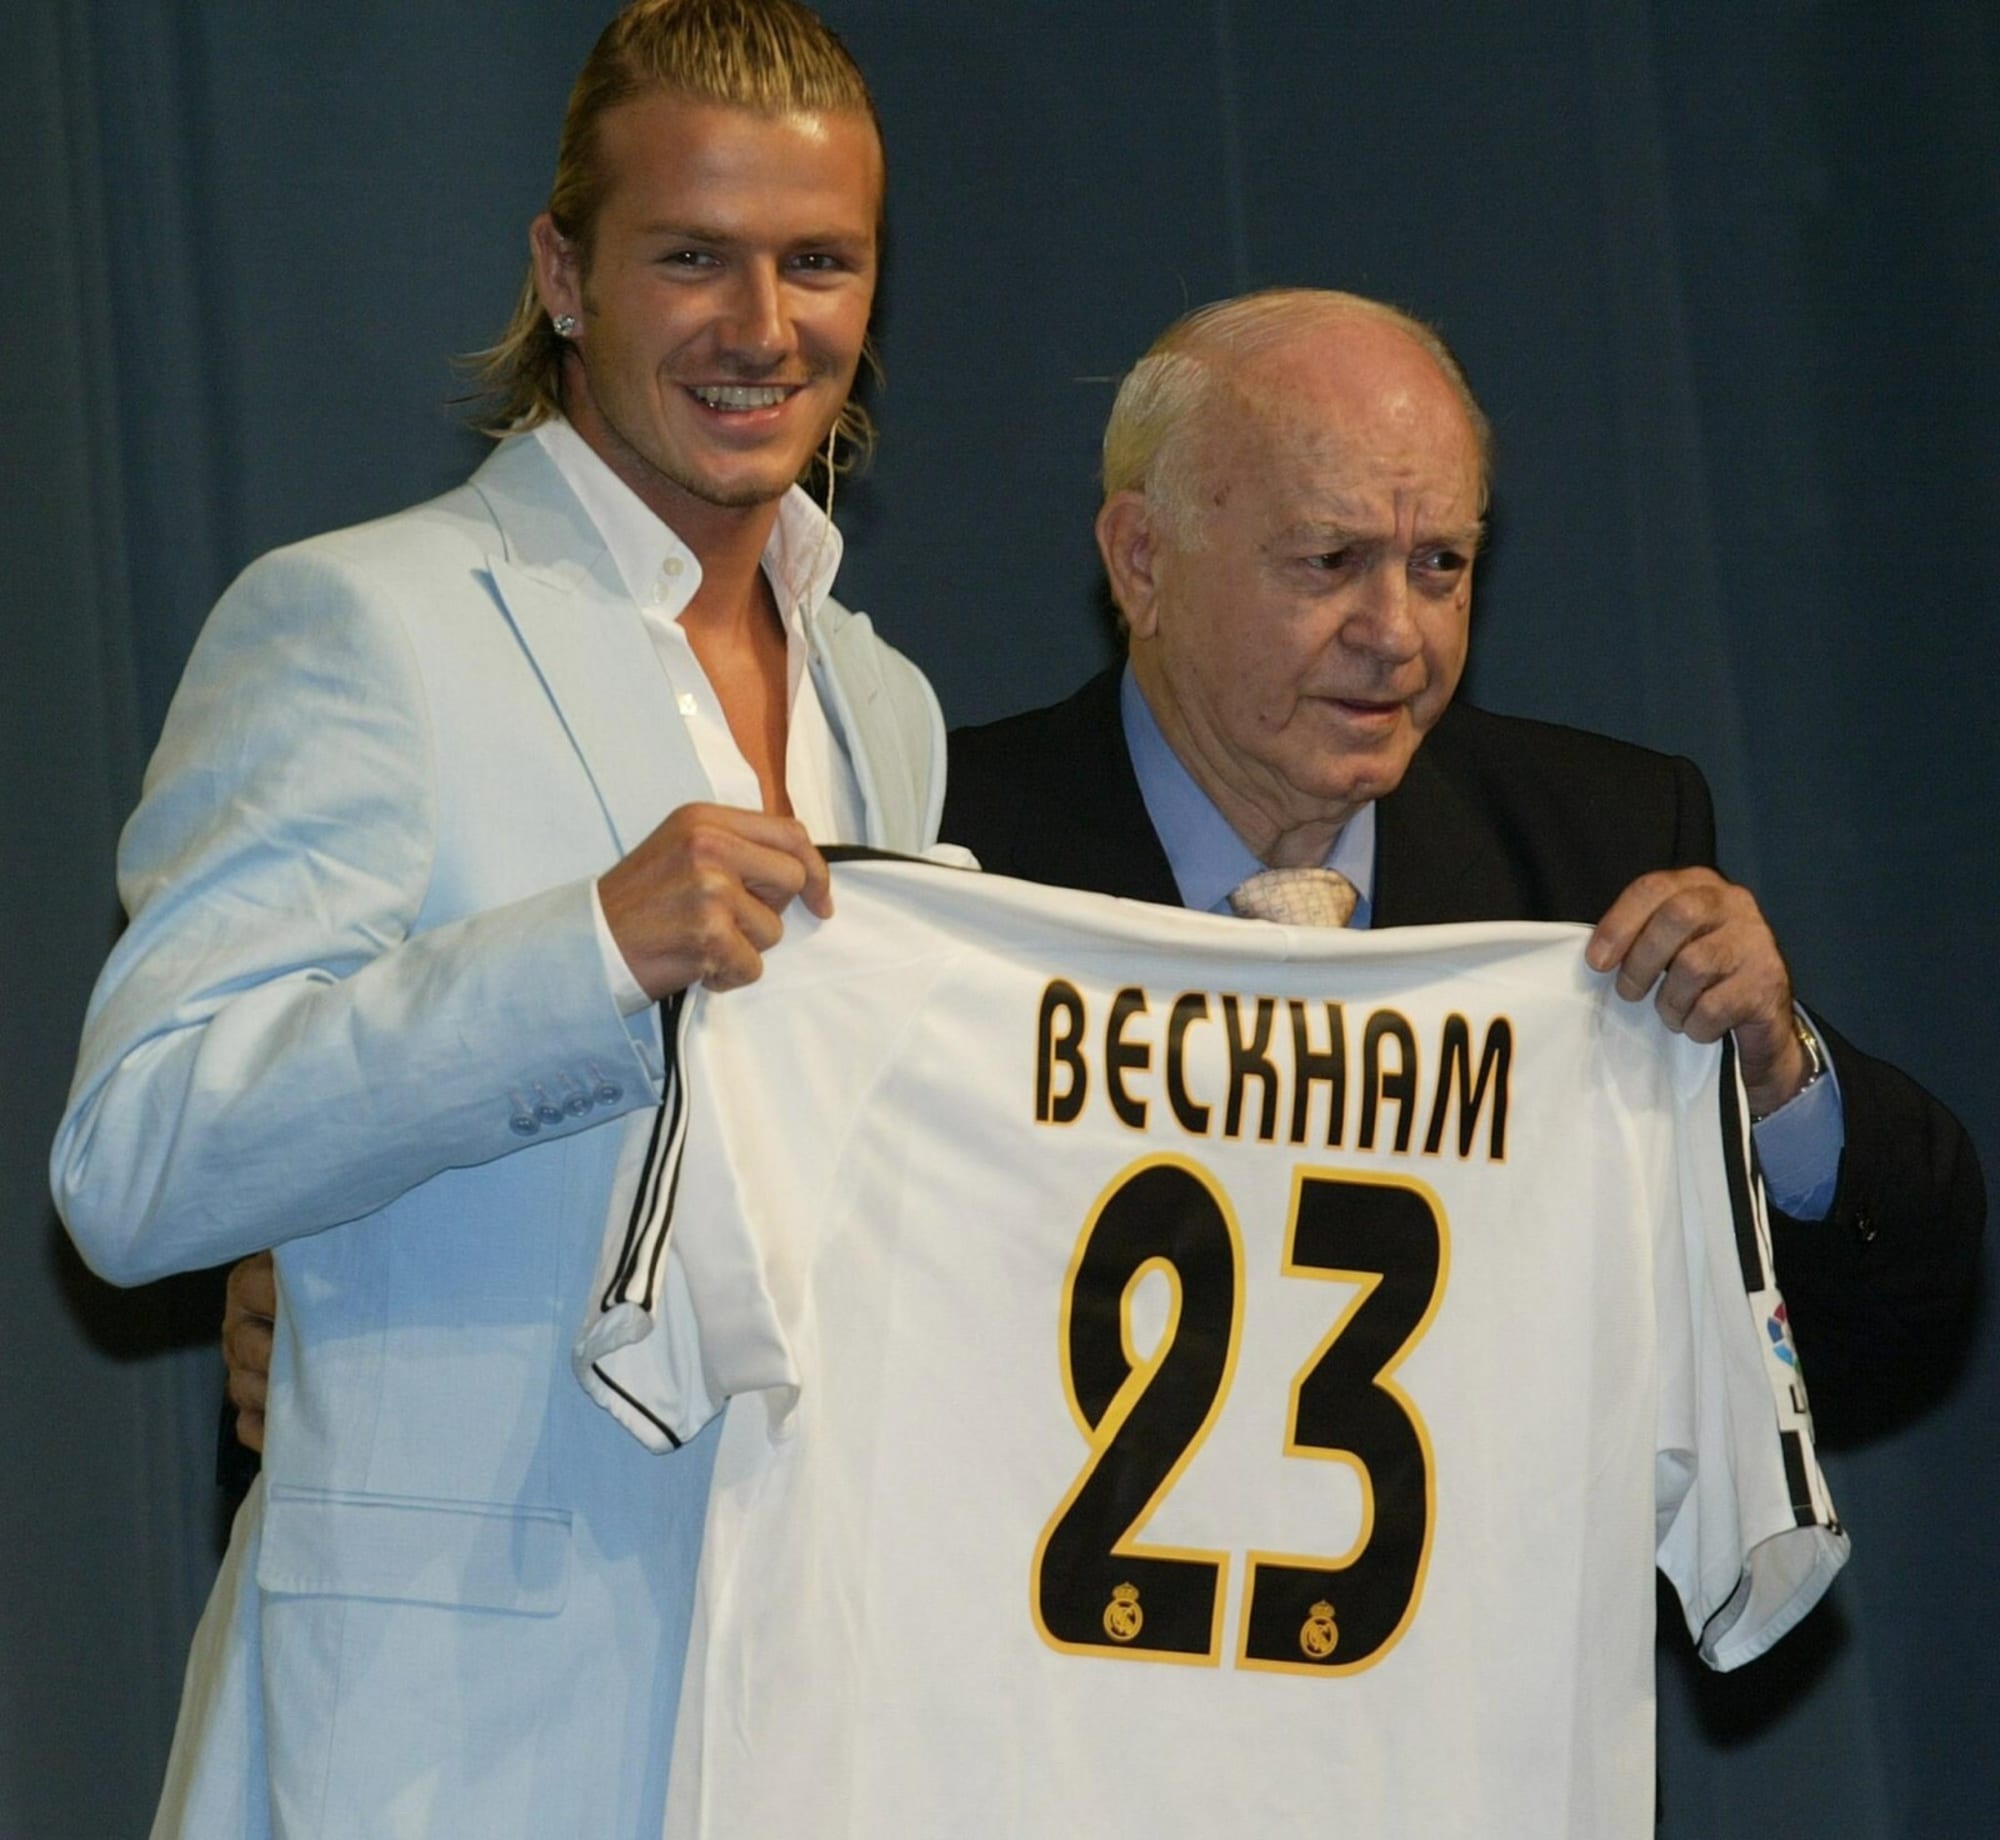 David Beckham được mệnh danh là cầu thủ sút phạt xuất sắc nhất lịch sử bóng đá